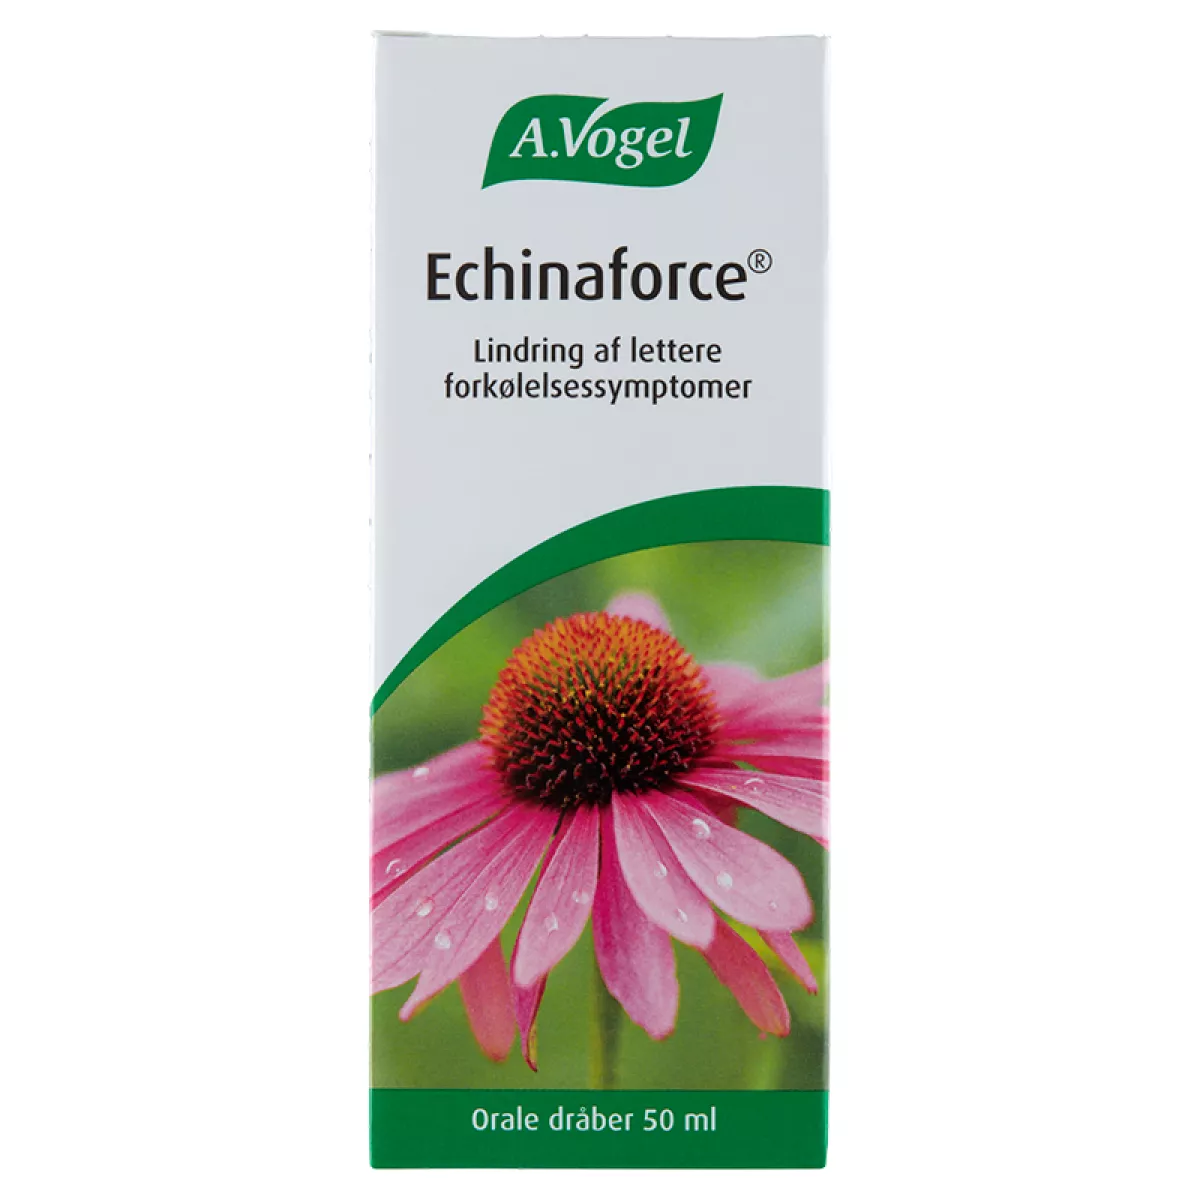 #1 - A. Vogel Echinaforce (50 ml)